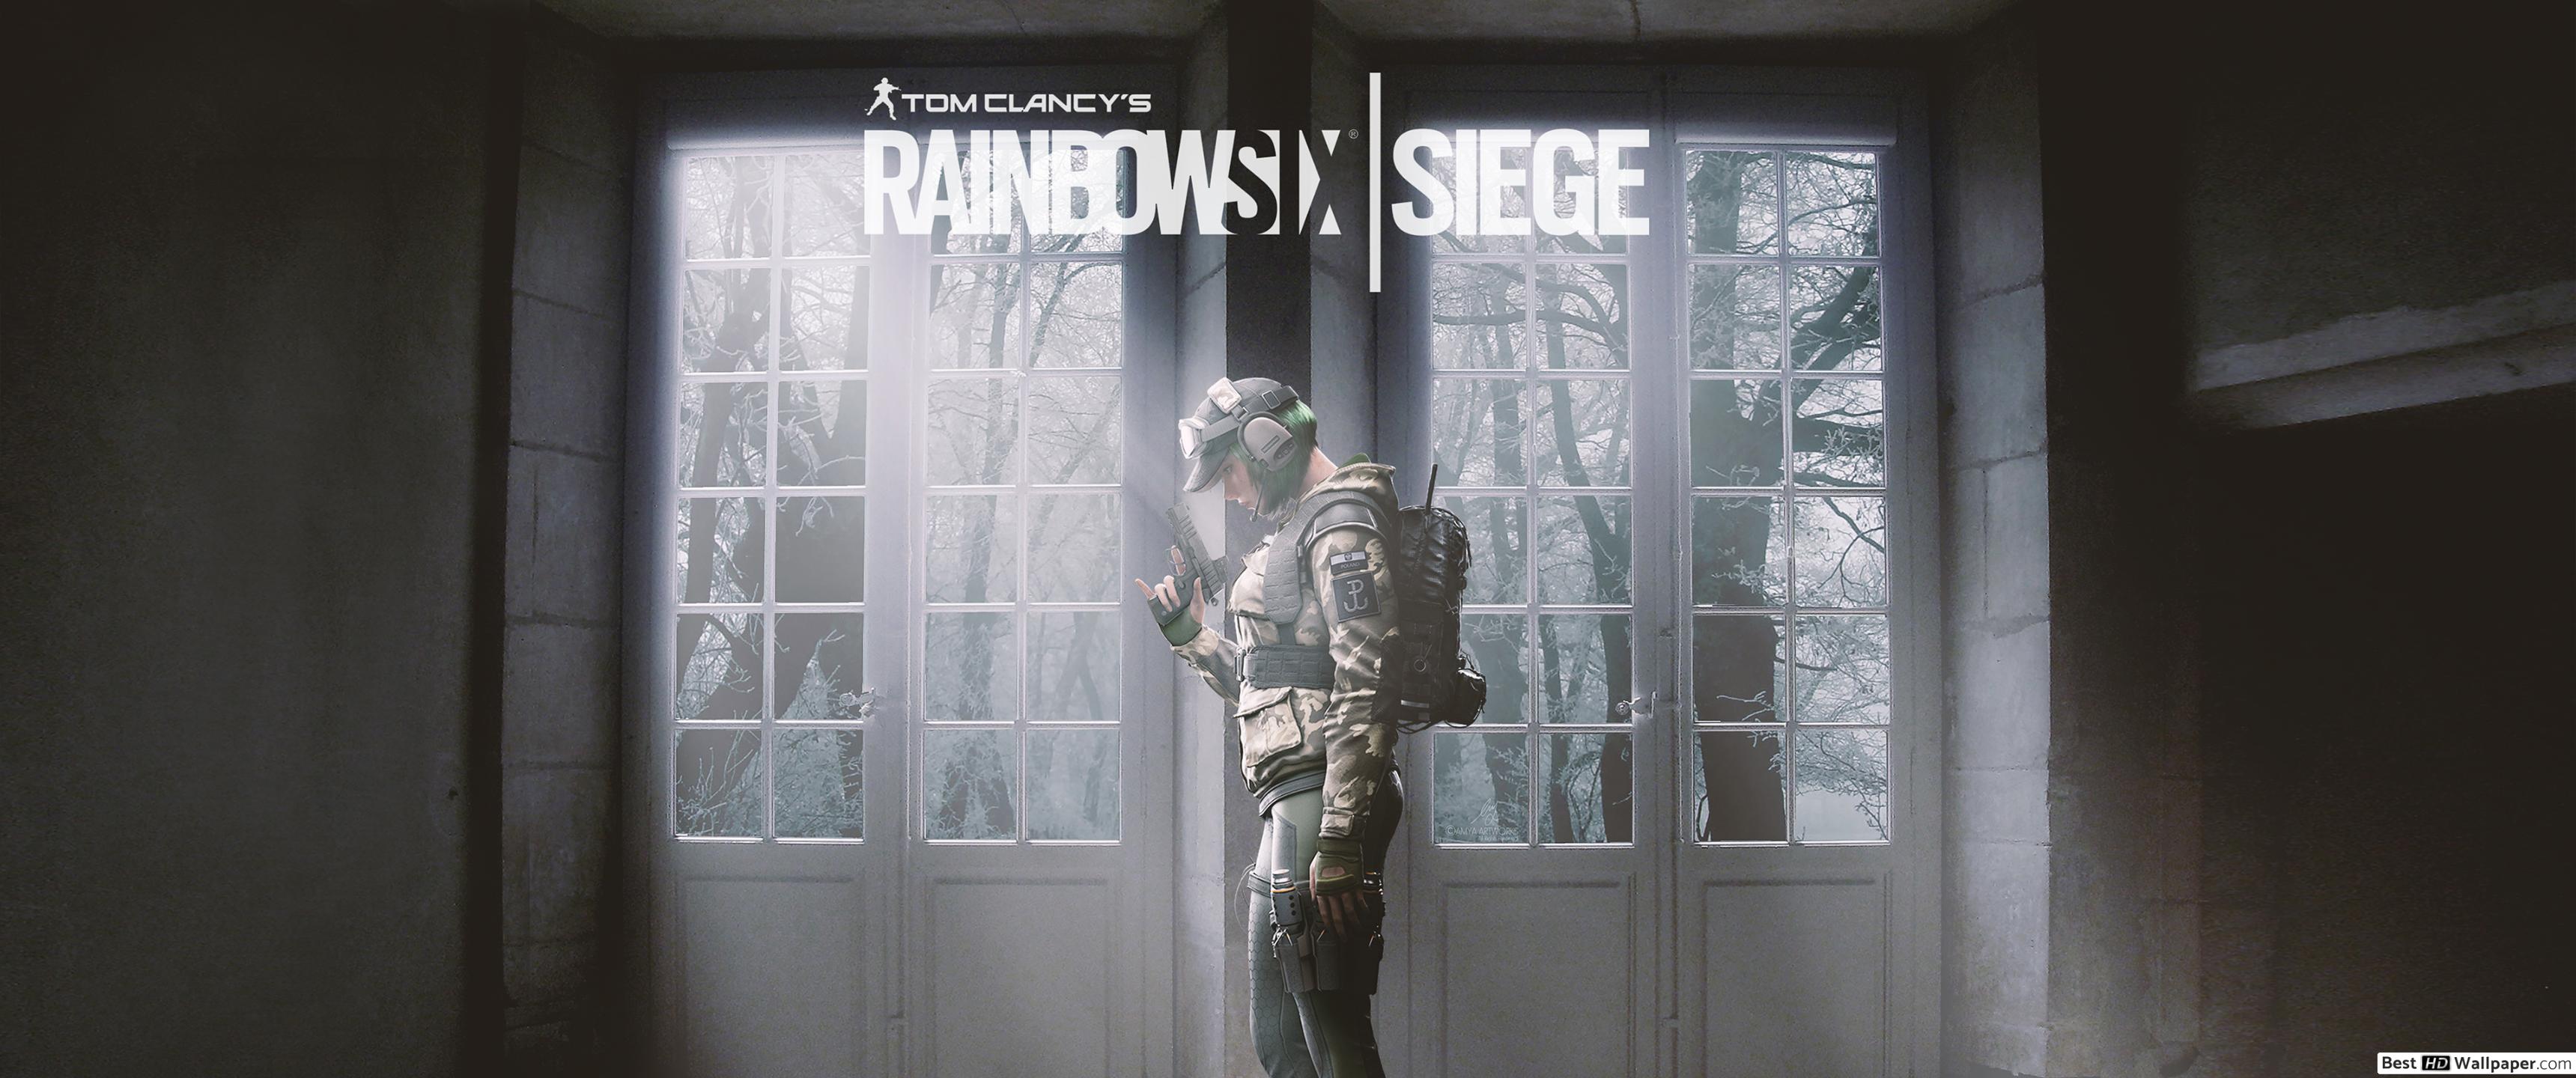 Ella Rainbow Six Siege - HD Wallpaper 